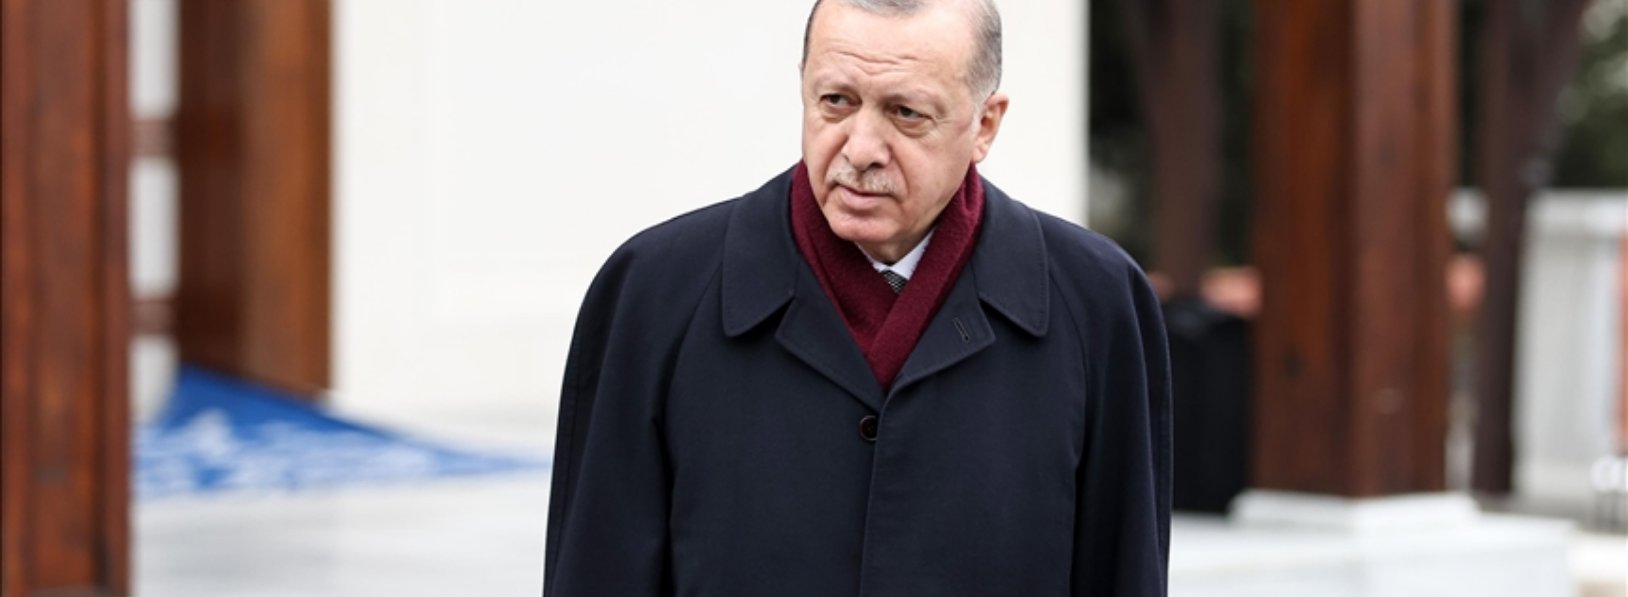 Cumhurbaşkanı Erdoğan: (Aşılama çalışmaları) Temenni ederiz ki mayıs, haziran gibi bu iş tamamlansın.